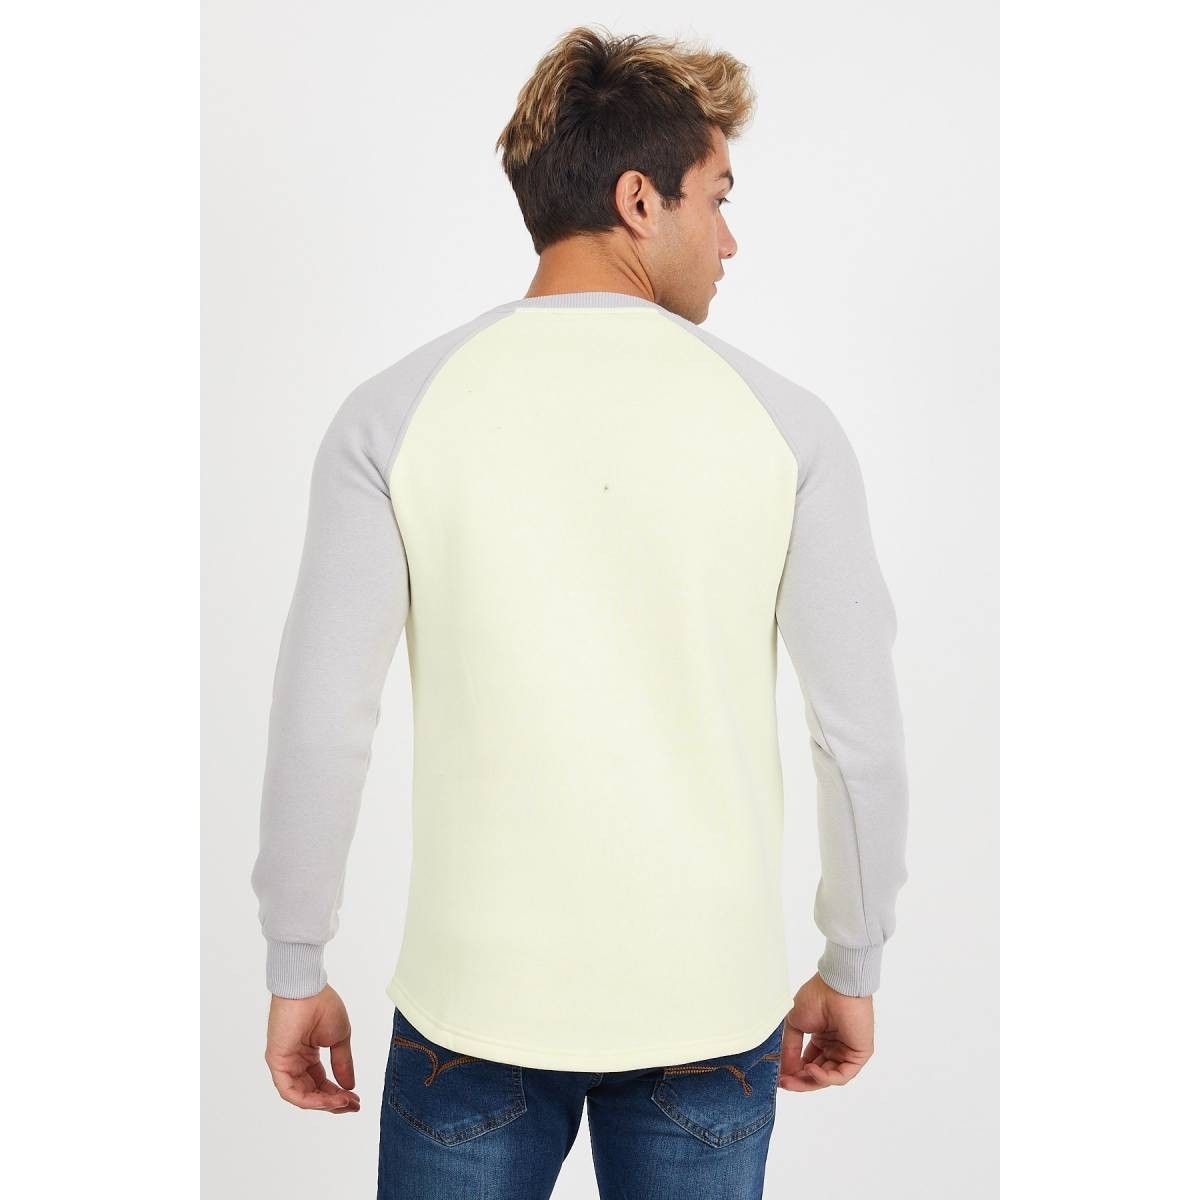 Flo Erkek Reglan Kol Sarı Sweatshirt - 61029. 4